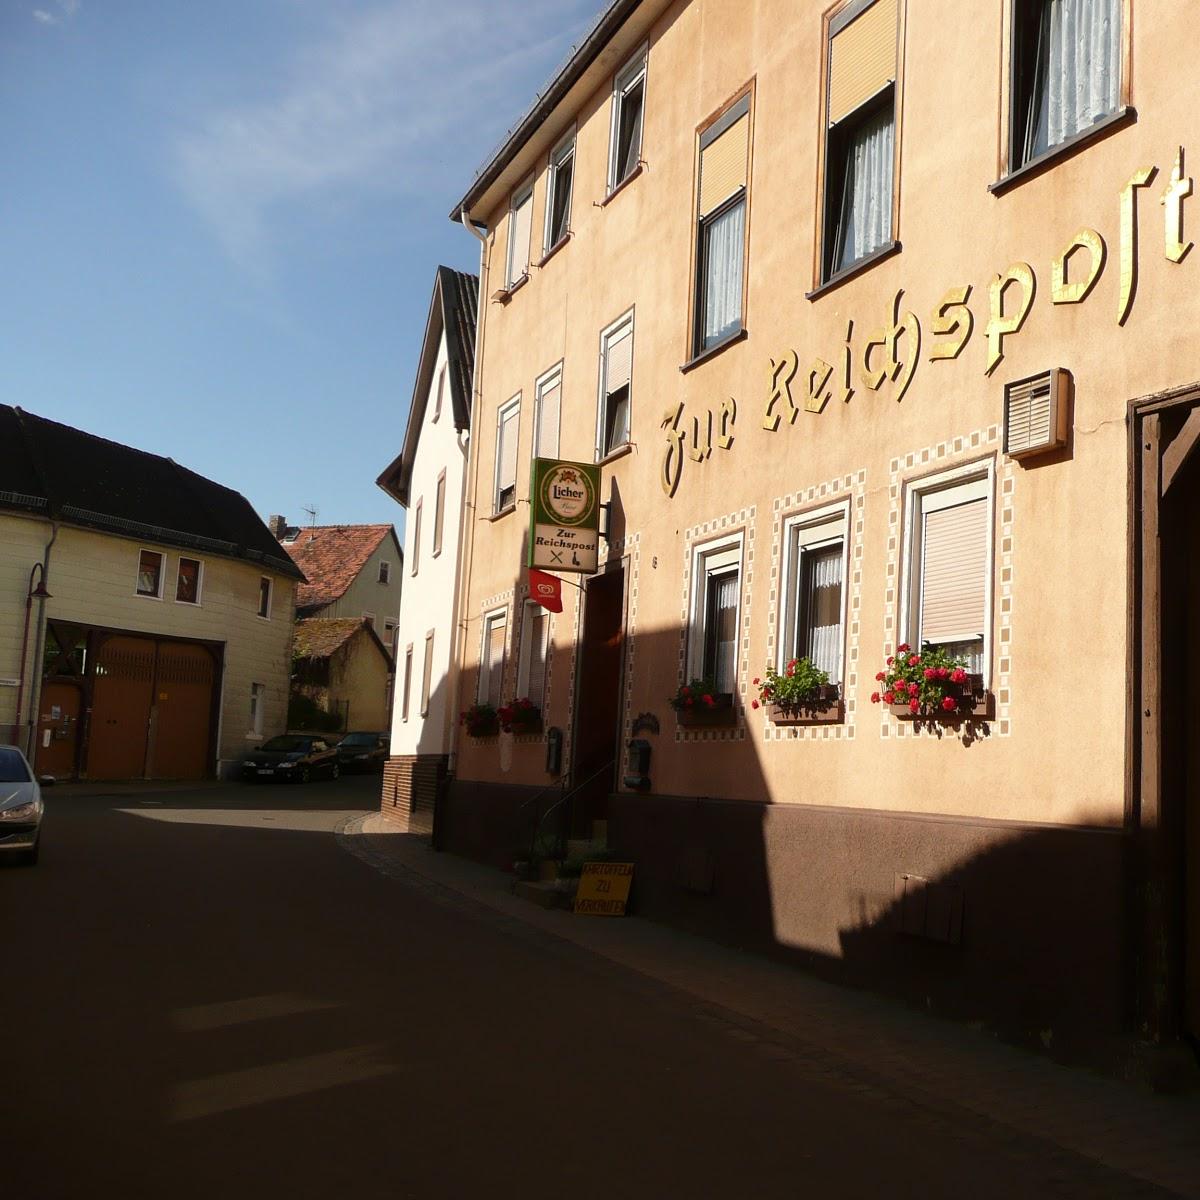 Restaurant "Zur Reichspost - Fam. Brod & Gray" in Butzbach